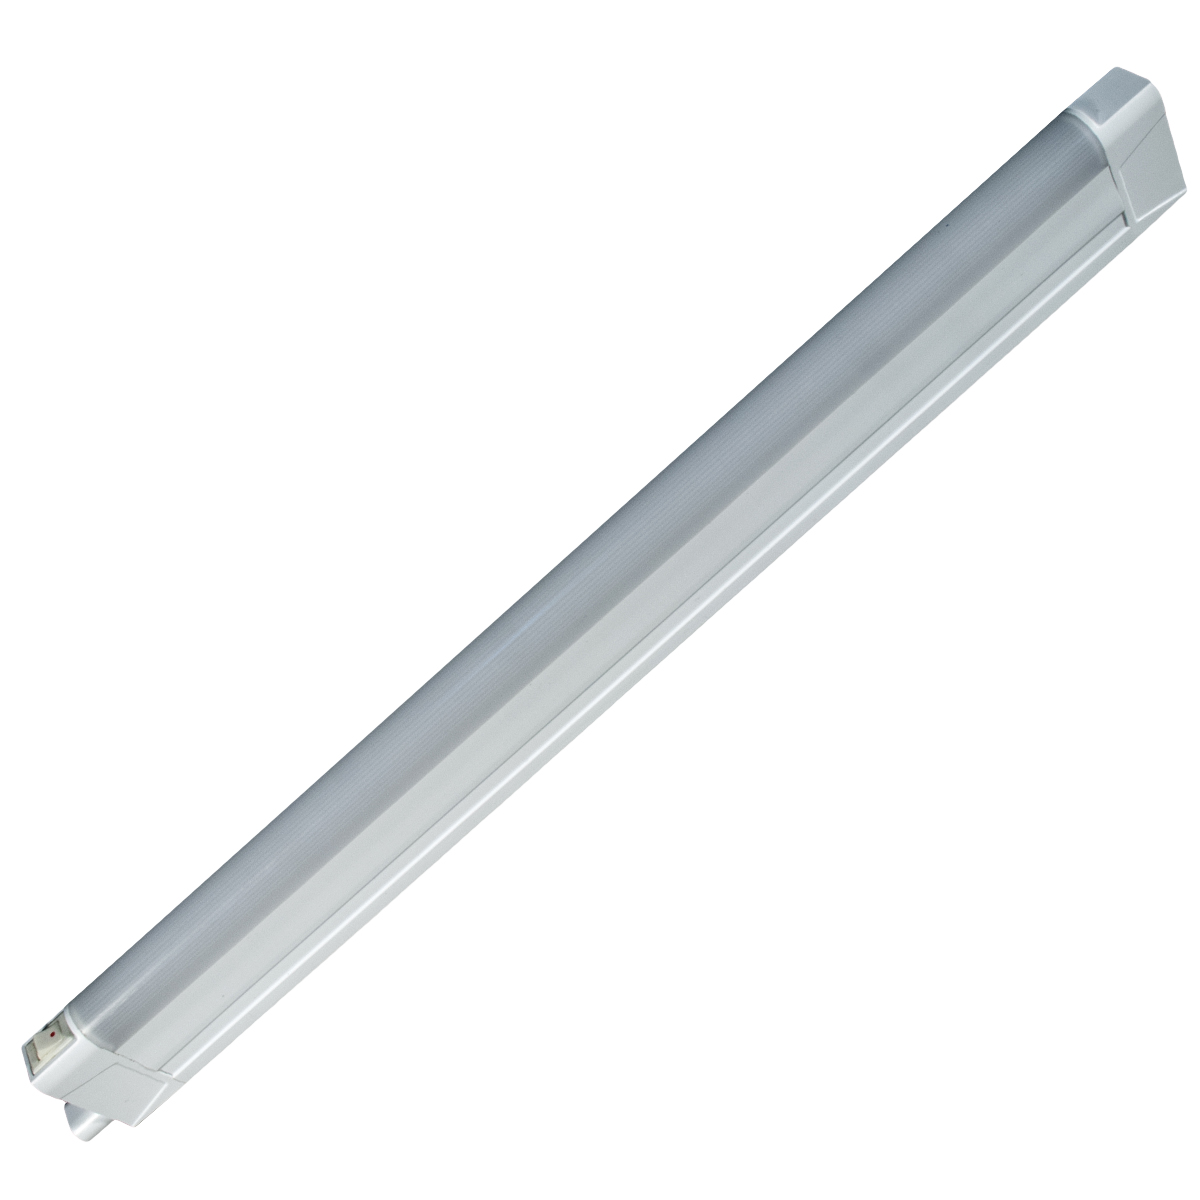 Линейный светодиодный светильник GLS LED Line 3, 3000К, 814 мм светильник светодиодный luazon ск 077 usb 2 5 вт 8 диодов 200 лм 3000 к теплый белый